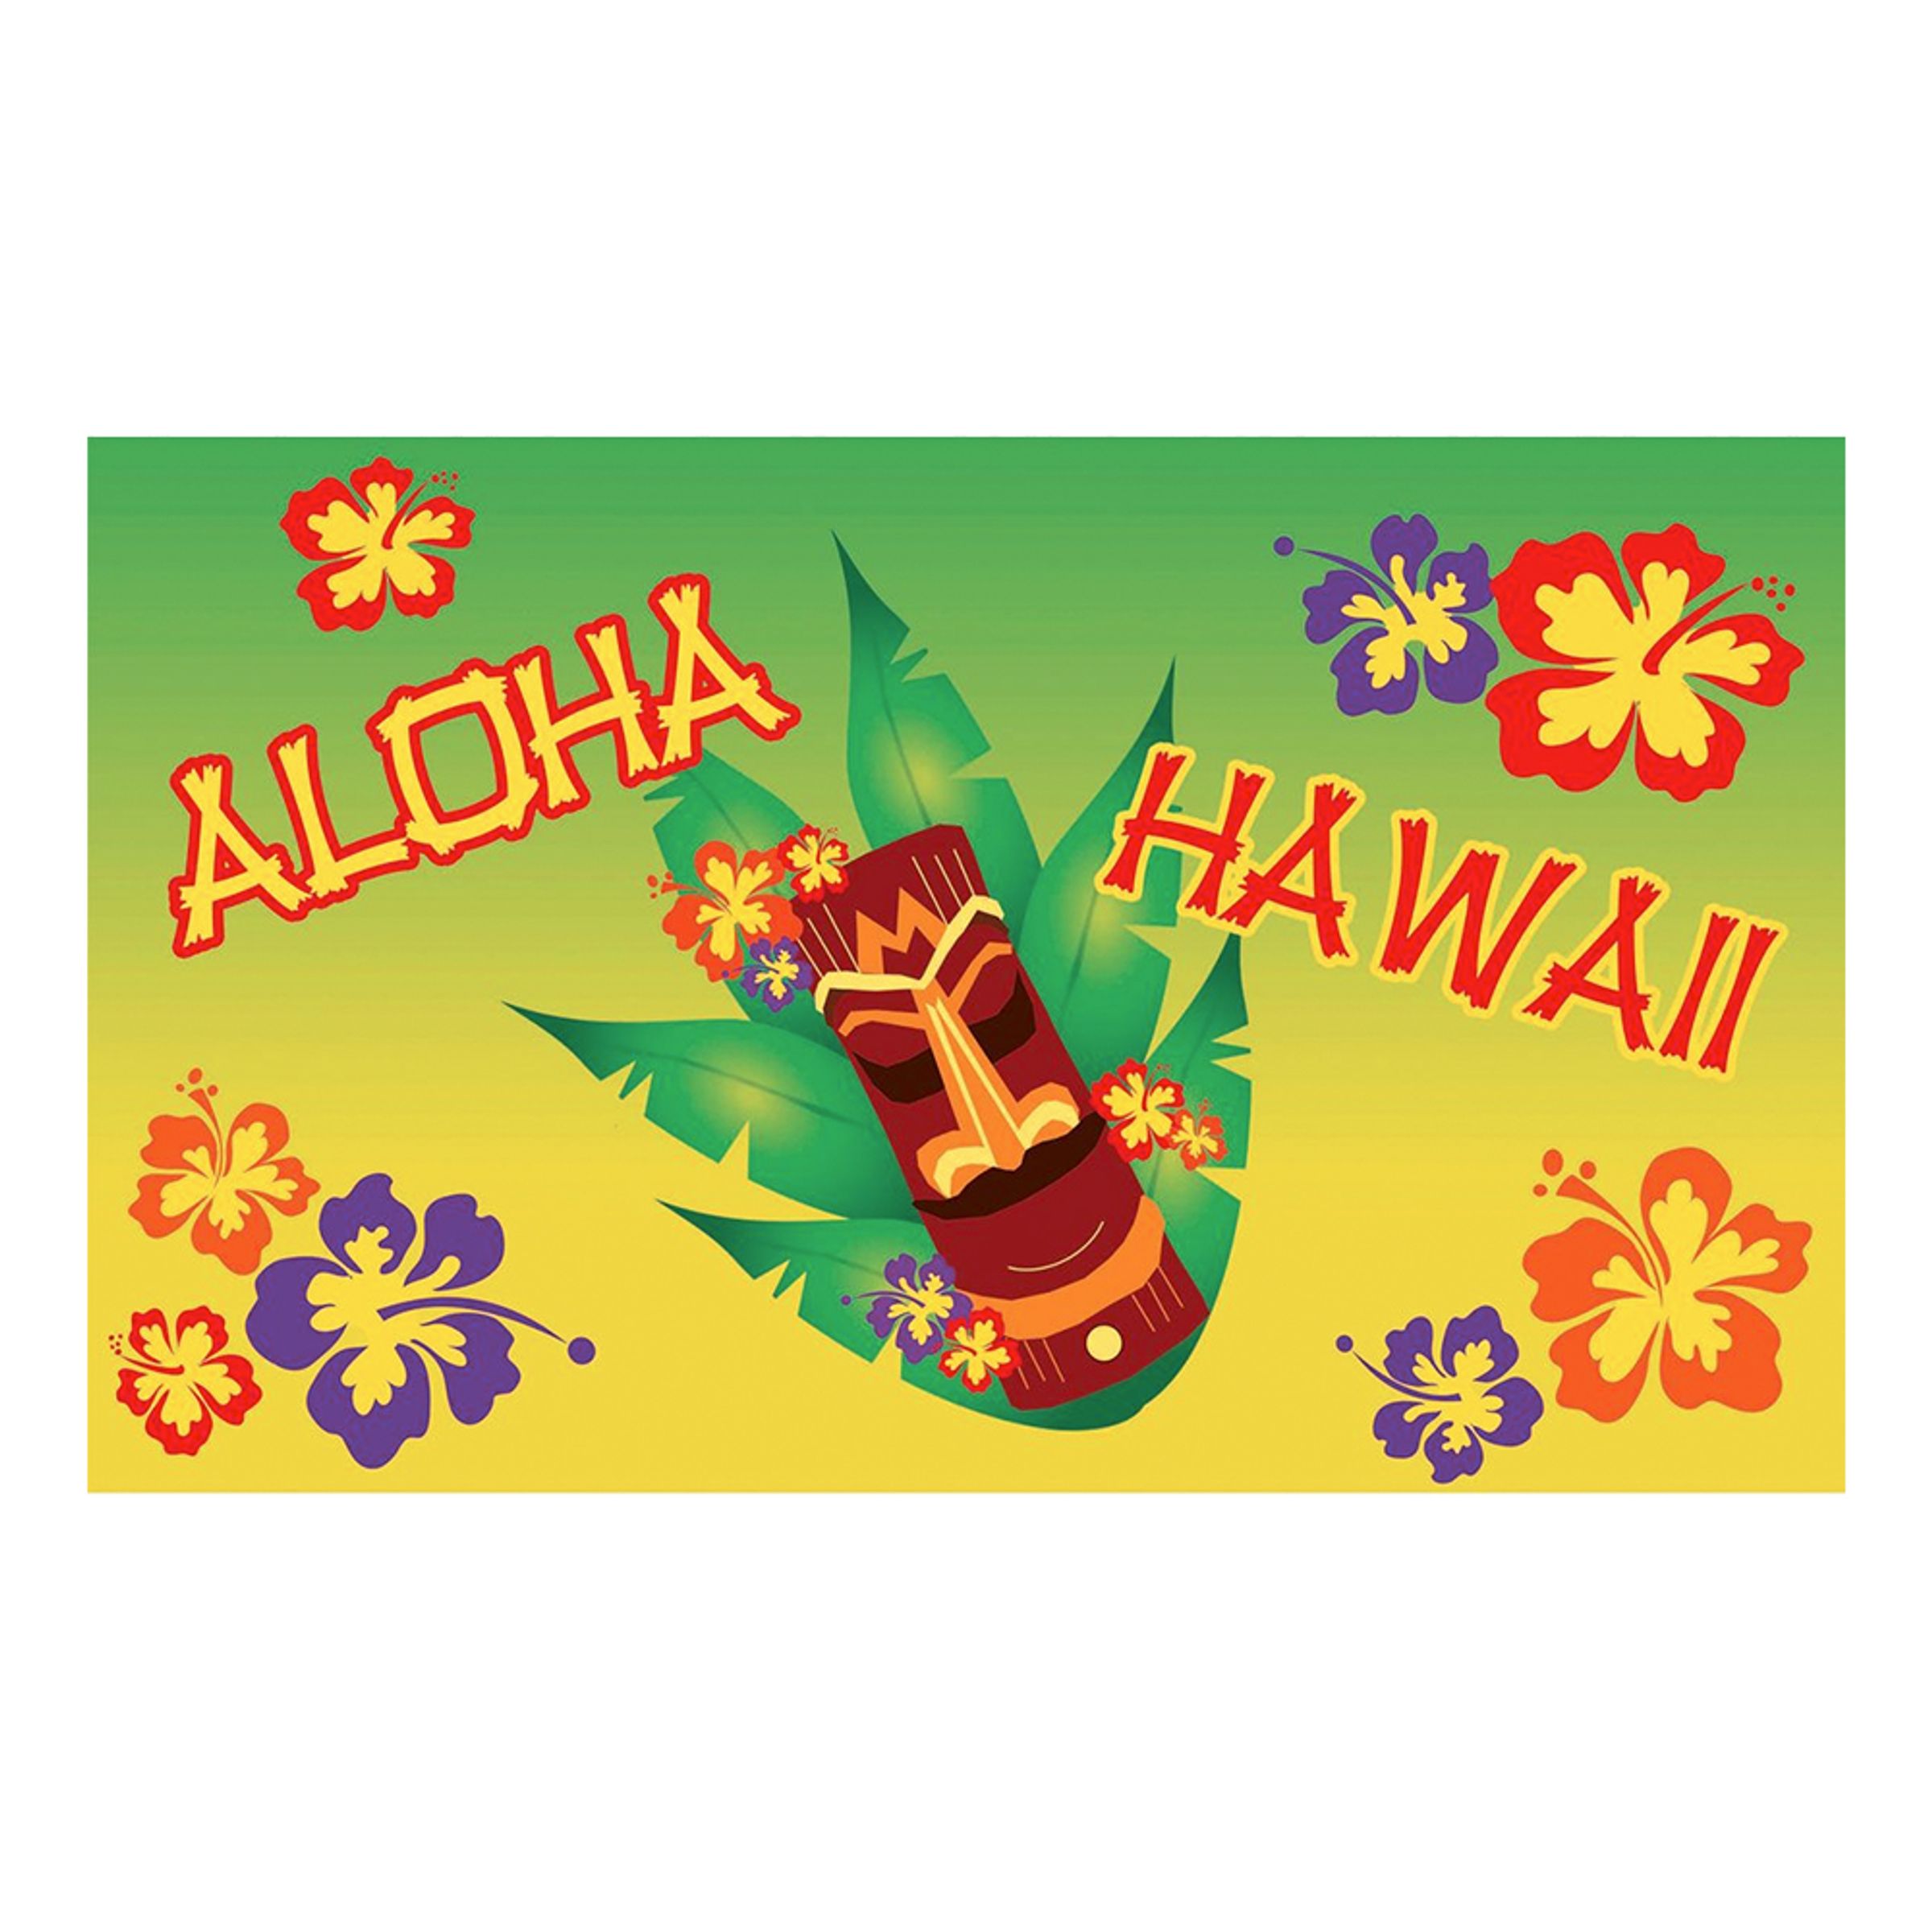 Flagga Aloha